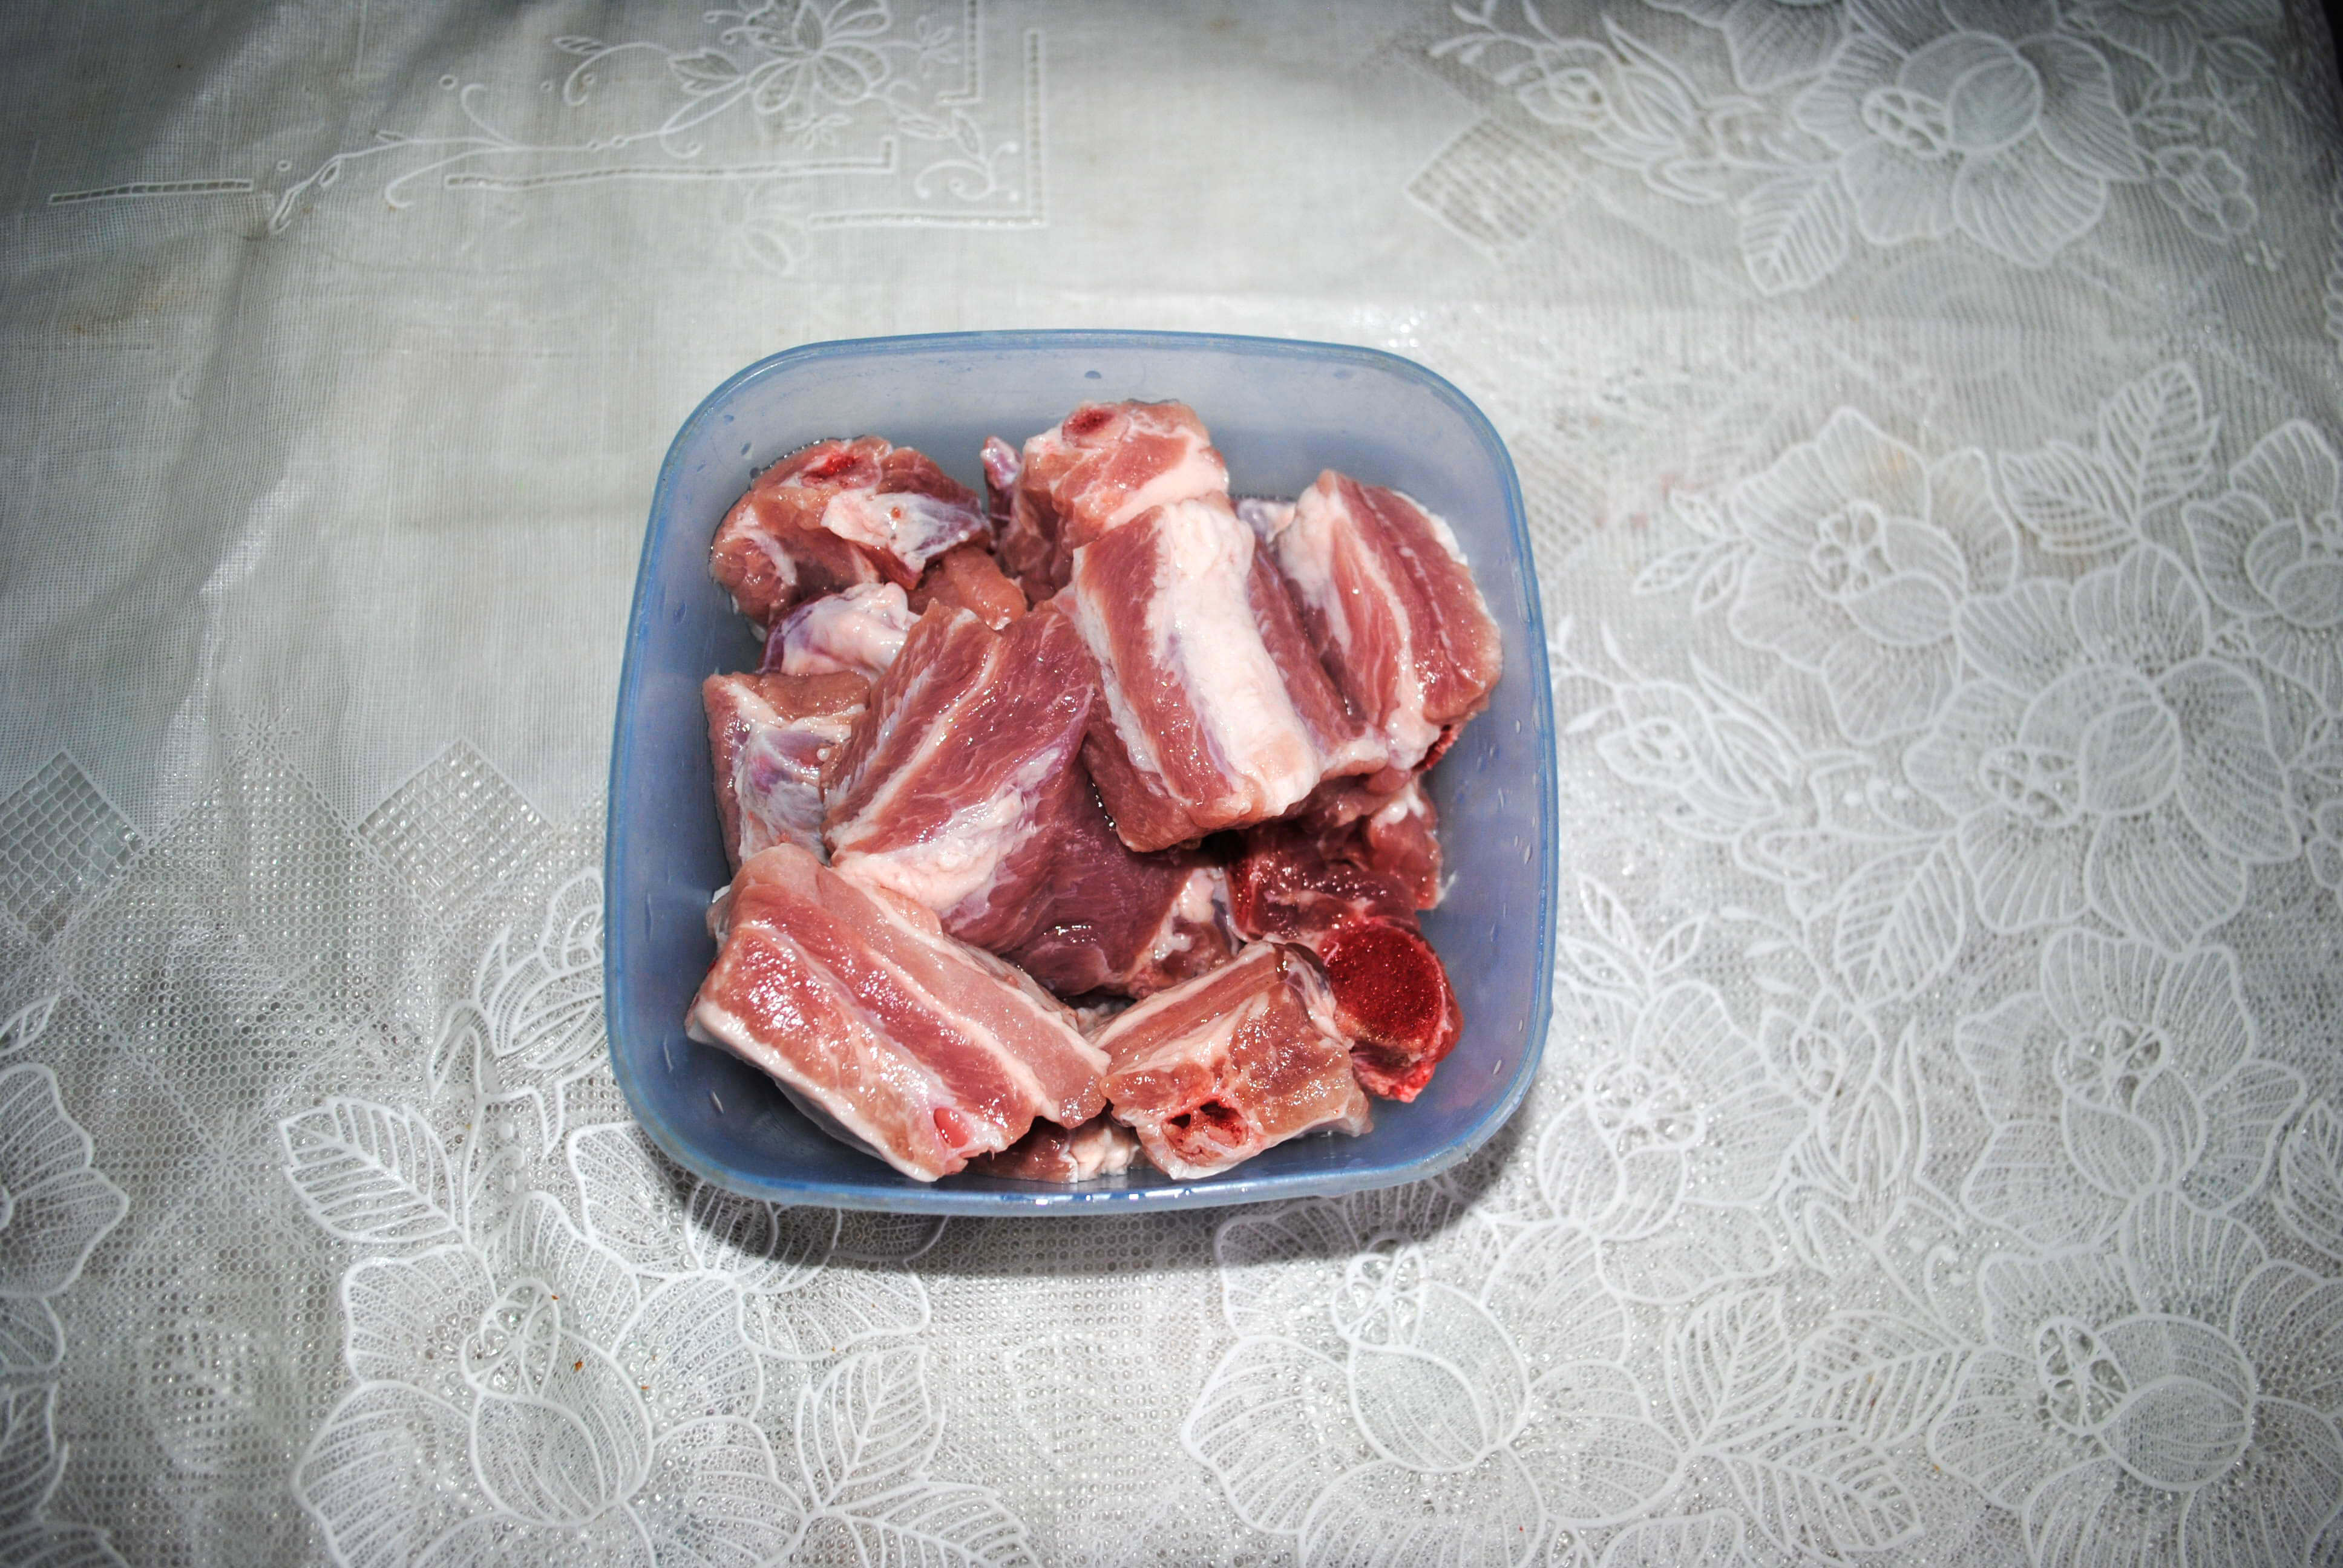 Мясо промоем в холодной воде и нарежем на порционные куски по вкусу.